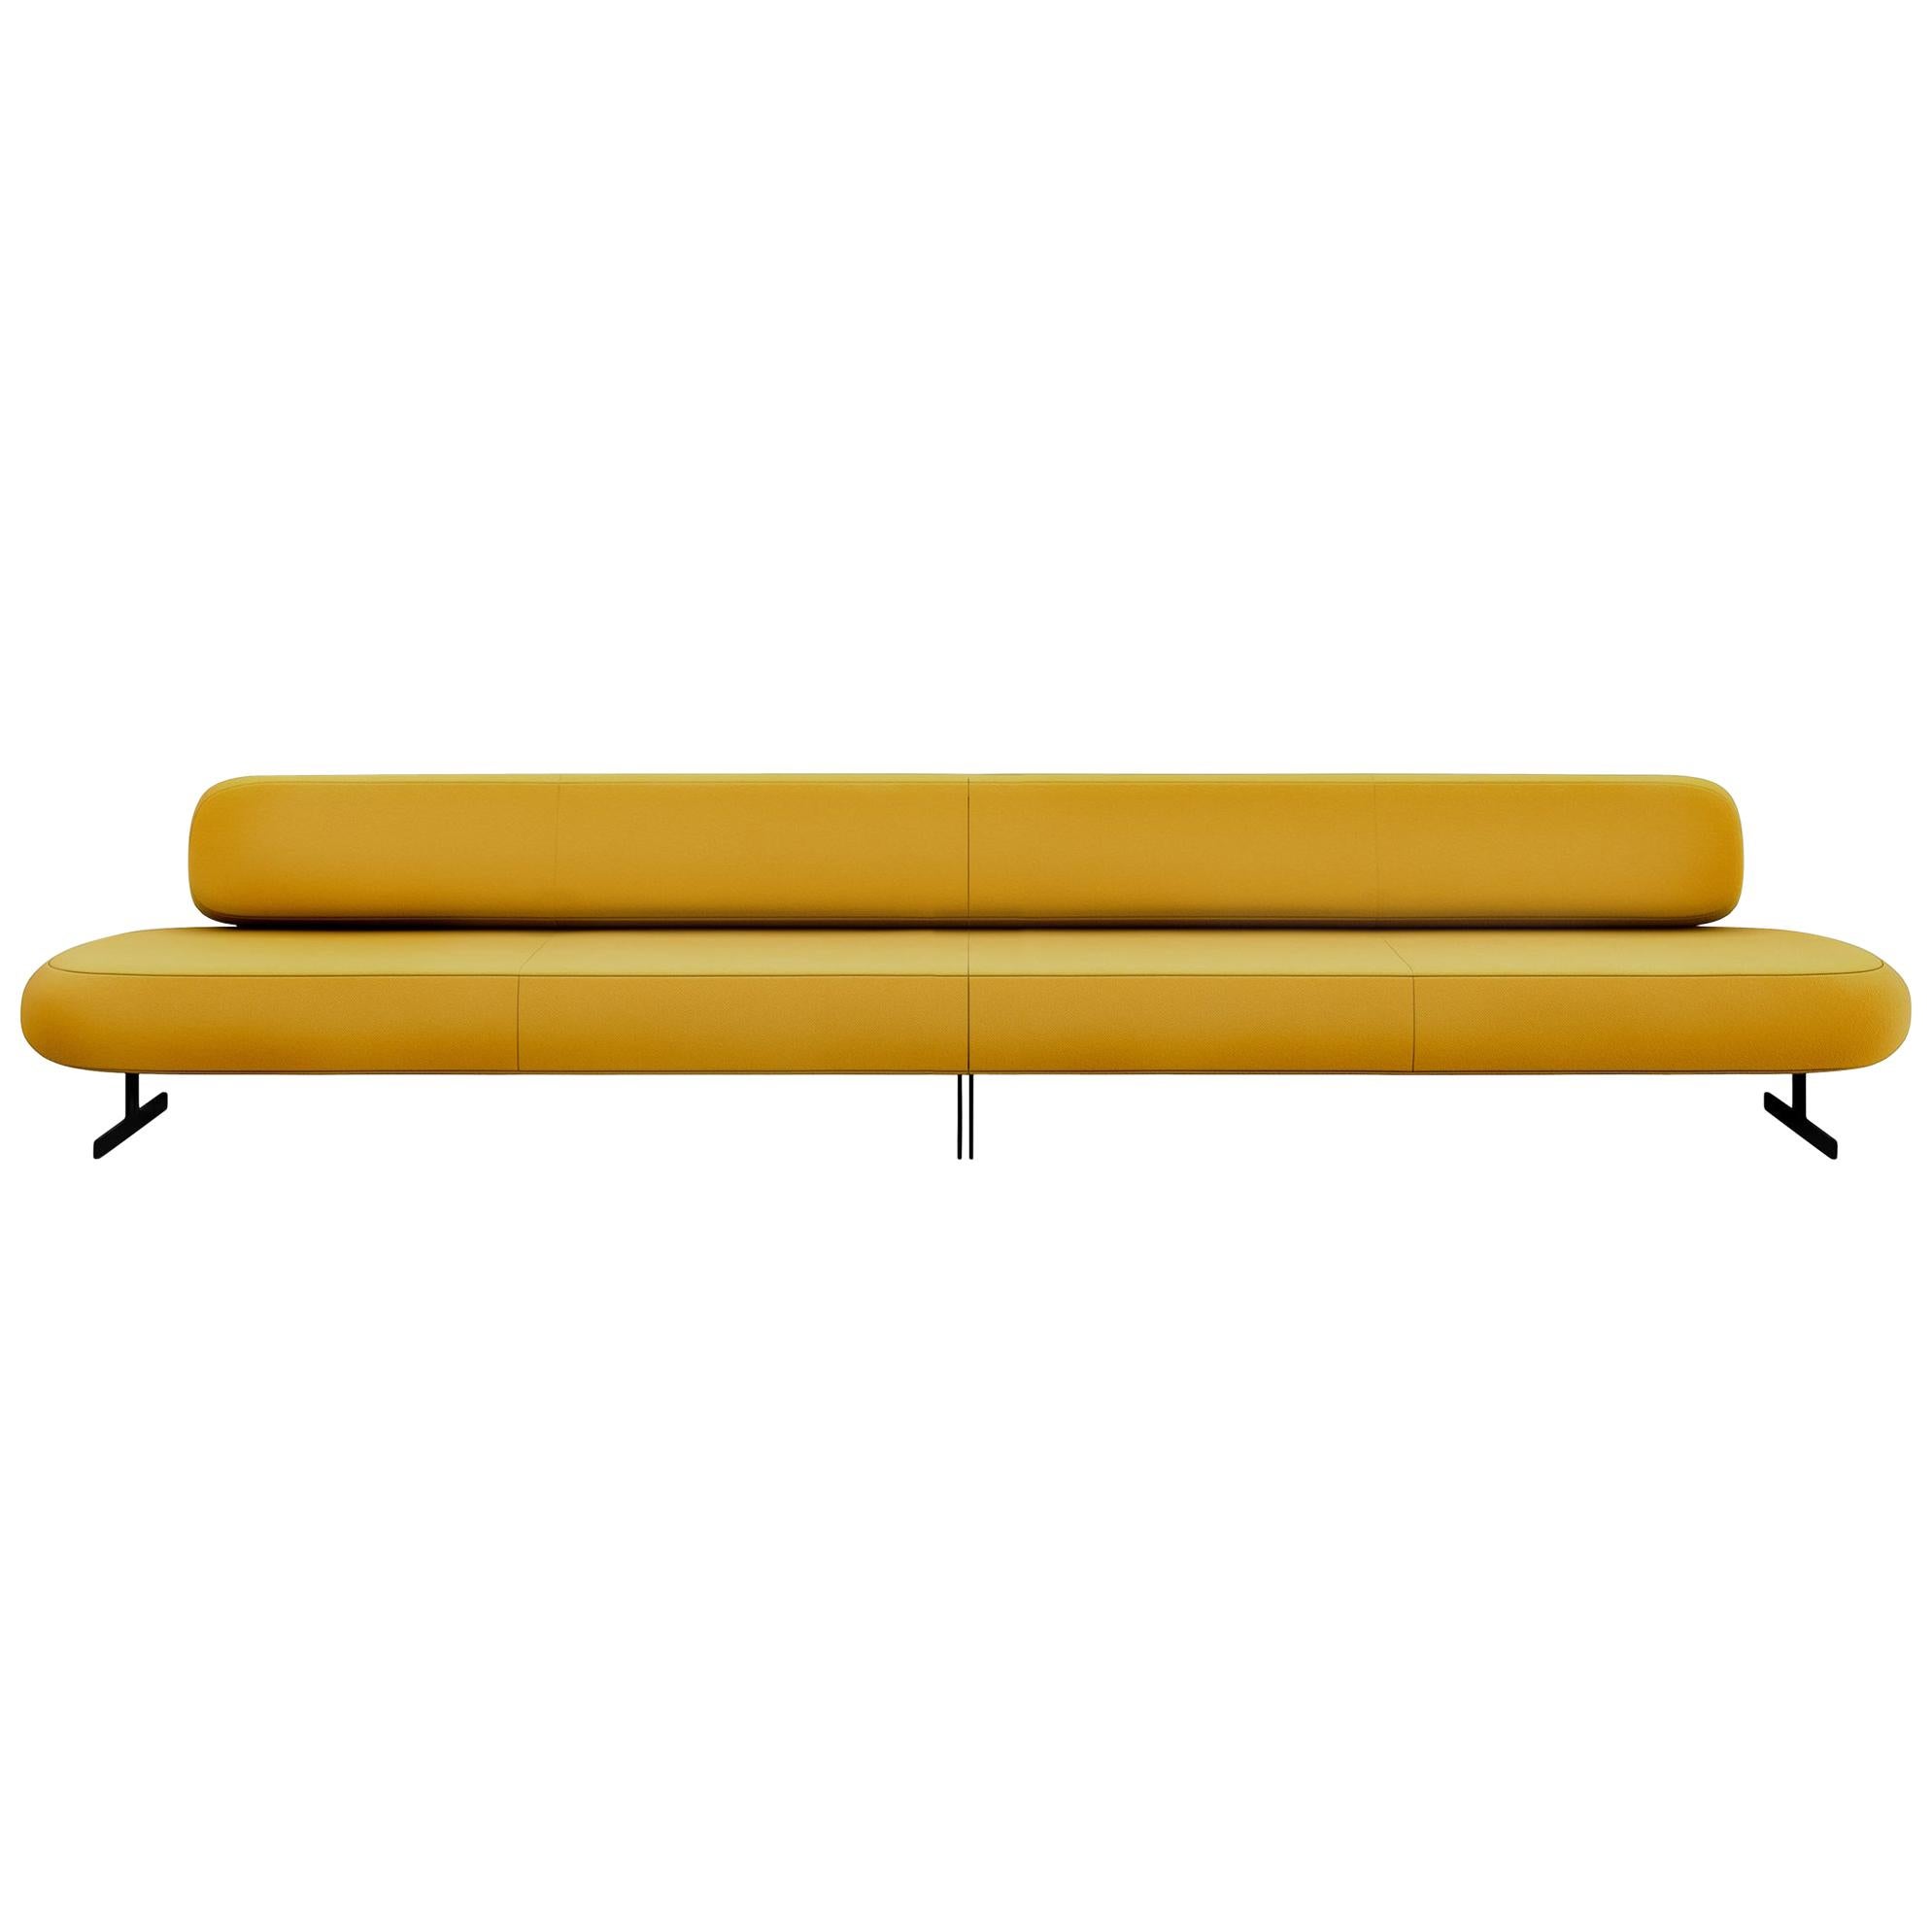 Tacchini Stone Modular Low Sofa in Yellow Daiki Fabric by Pearson-Lloyd